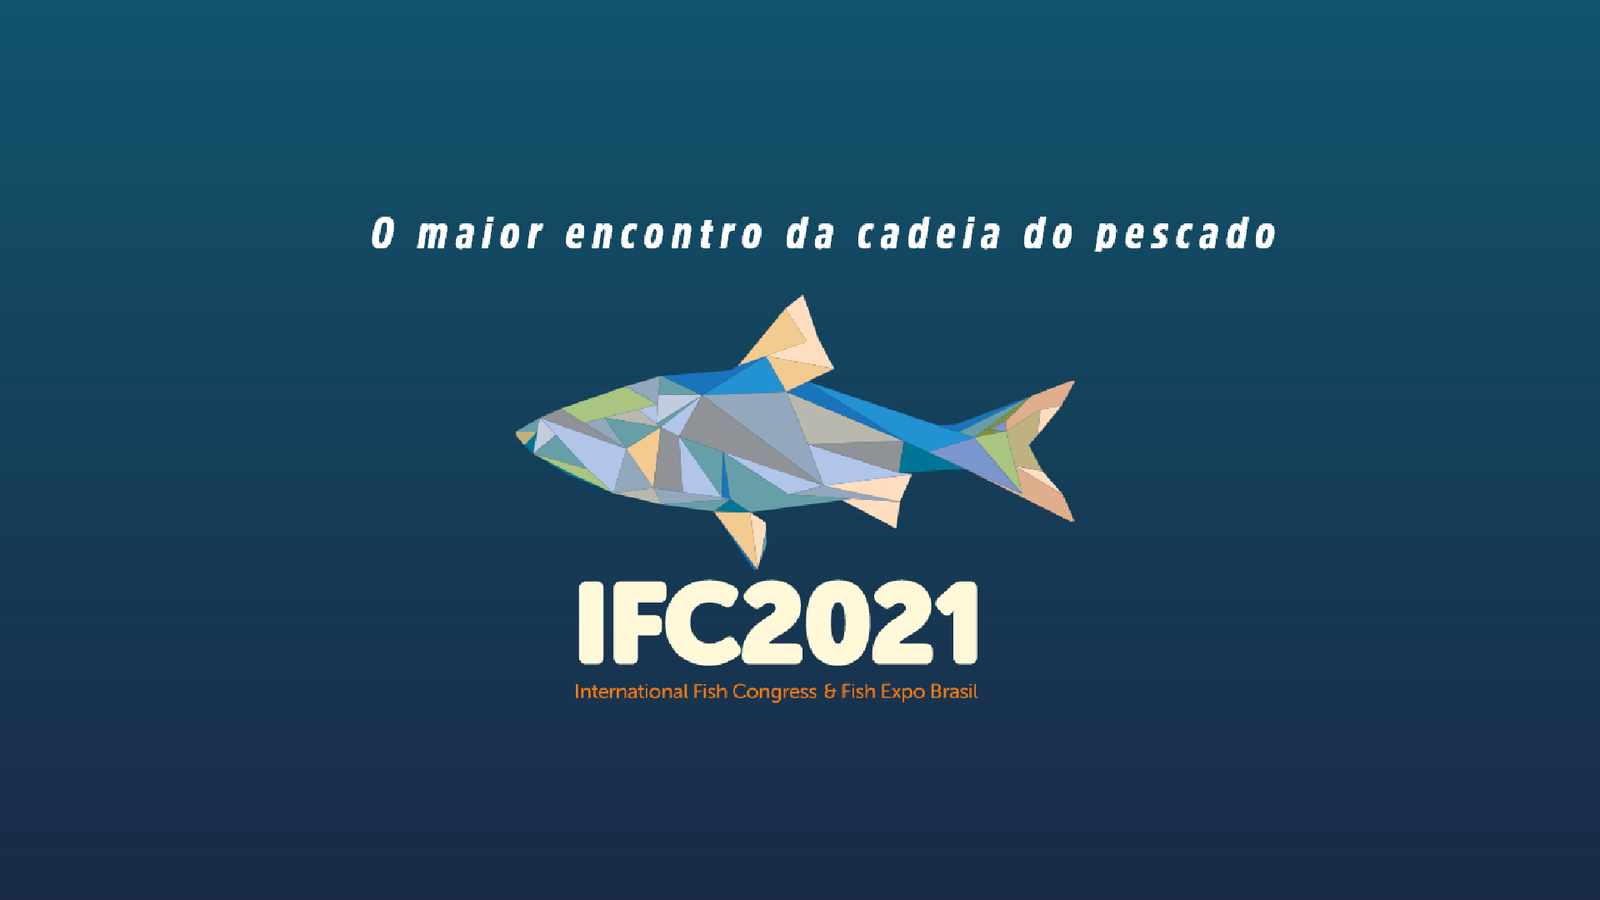 ABRA participará do IFC 2021, que inicia na próxima semana